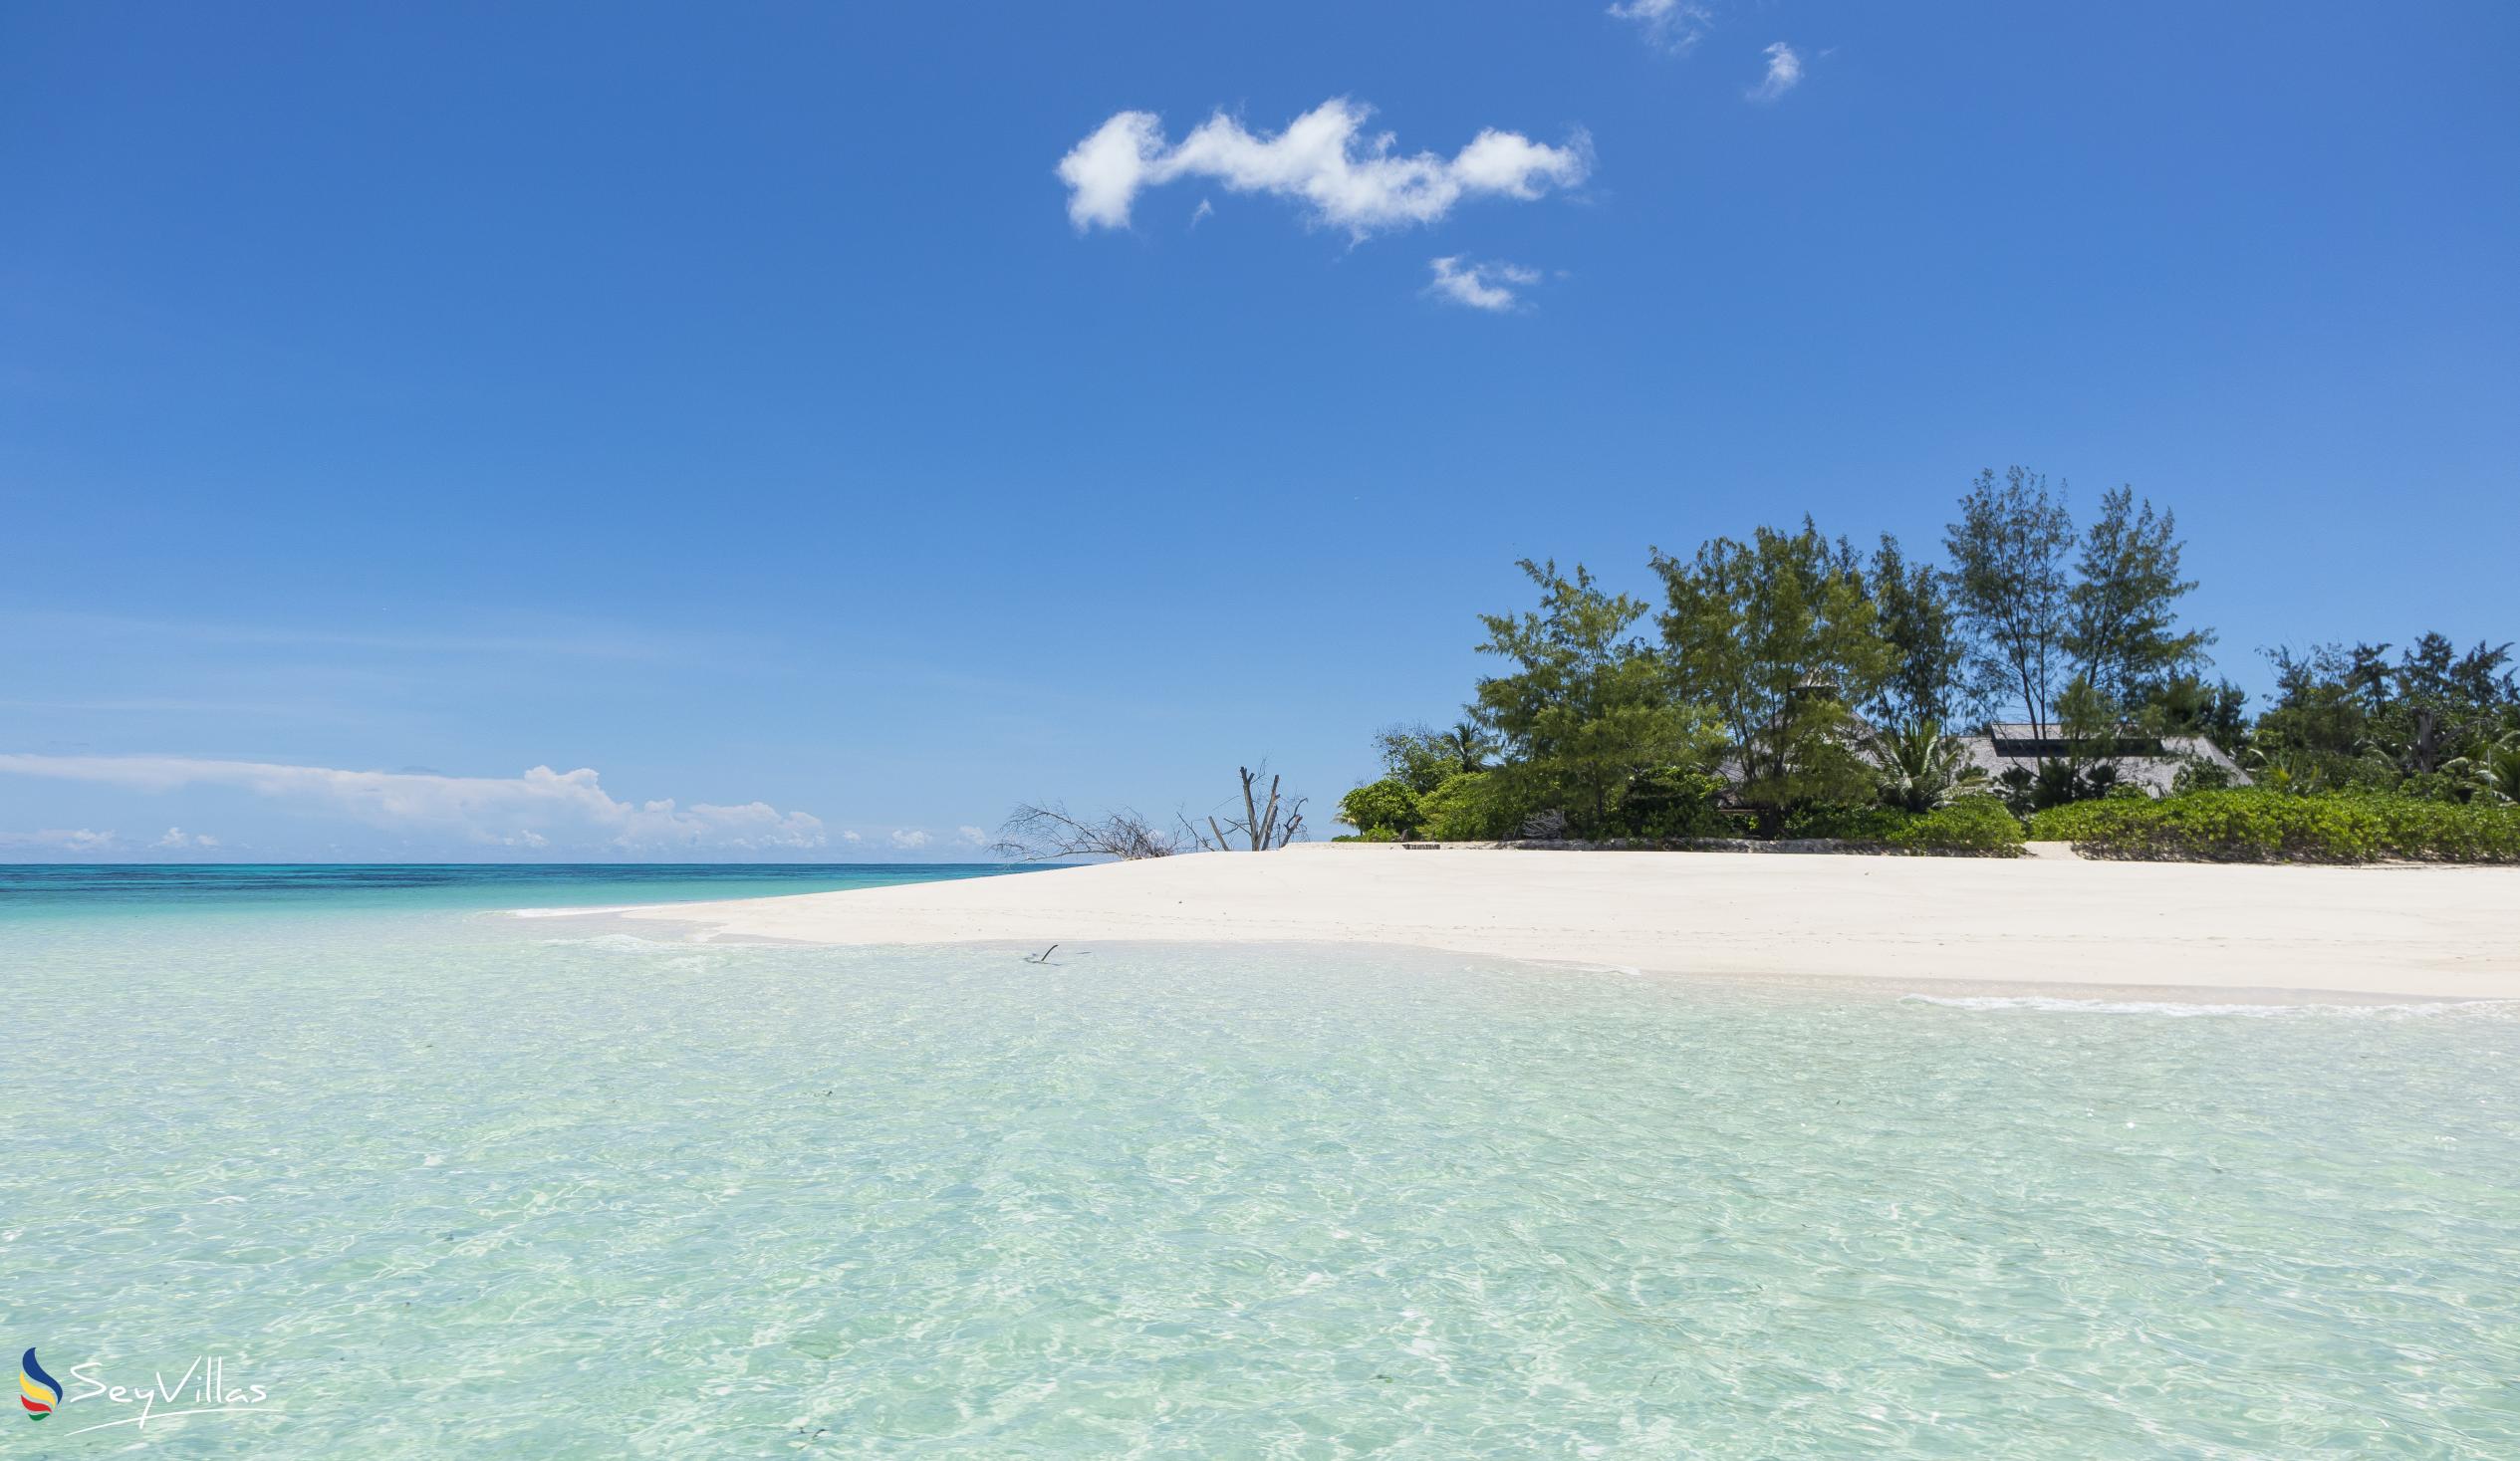 Foto 3: Denis Island Beaches - Weitere Inseln (Seychellen)